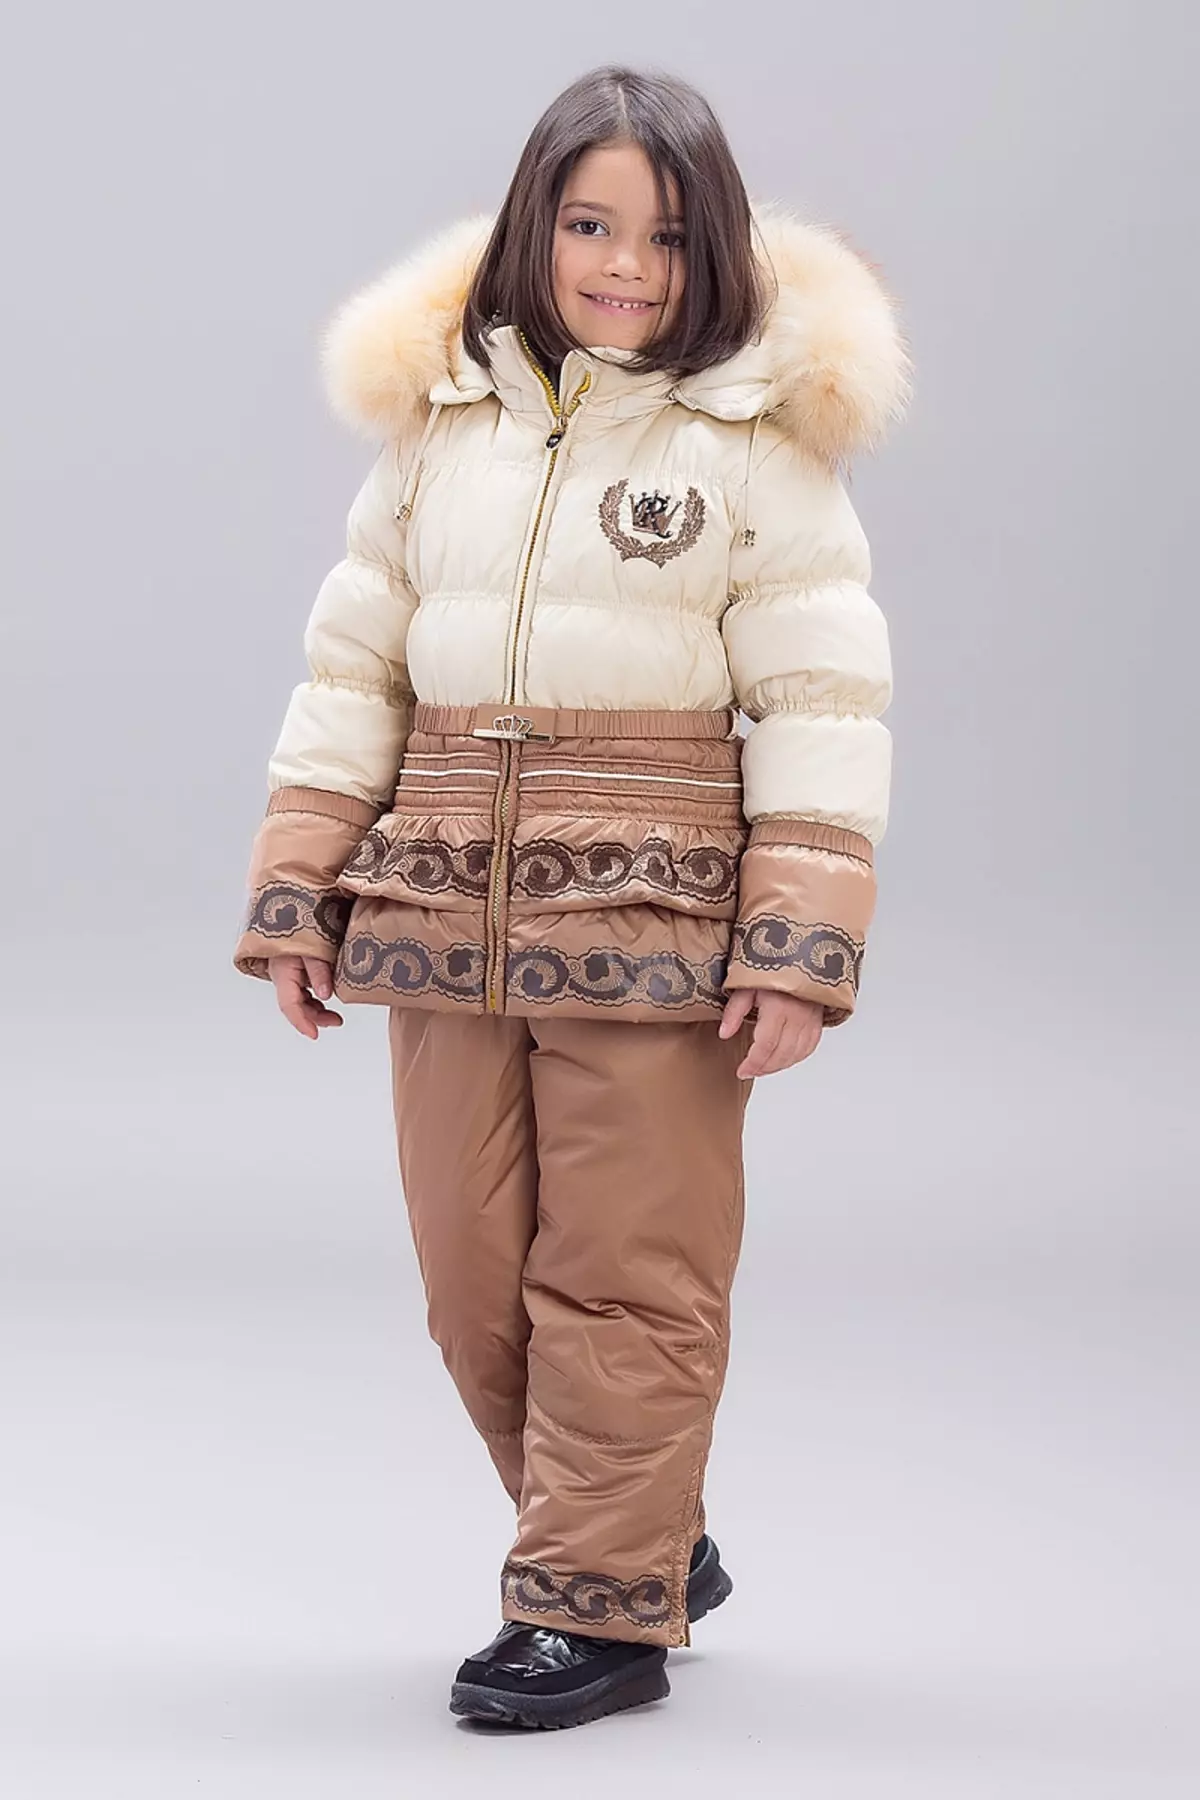 Bilemi（38张照片）：儿童服装，冬季套装和工作服，雨衣和夹克，品牌评论 3802_31